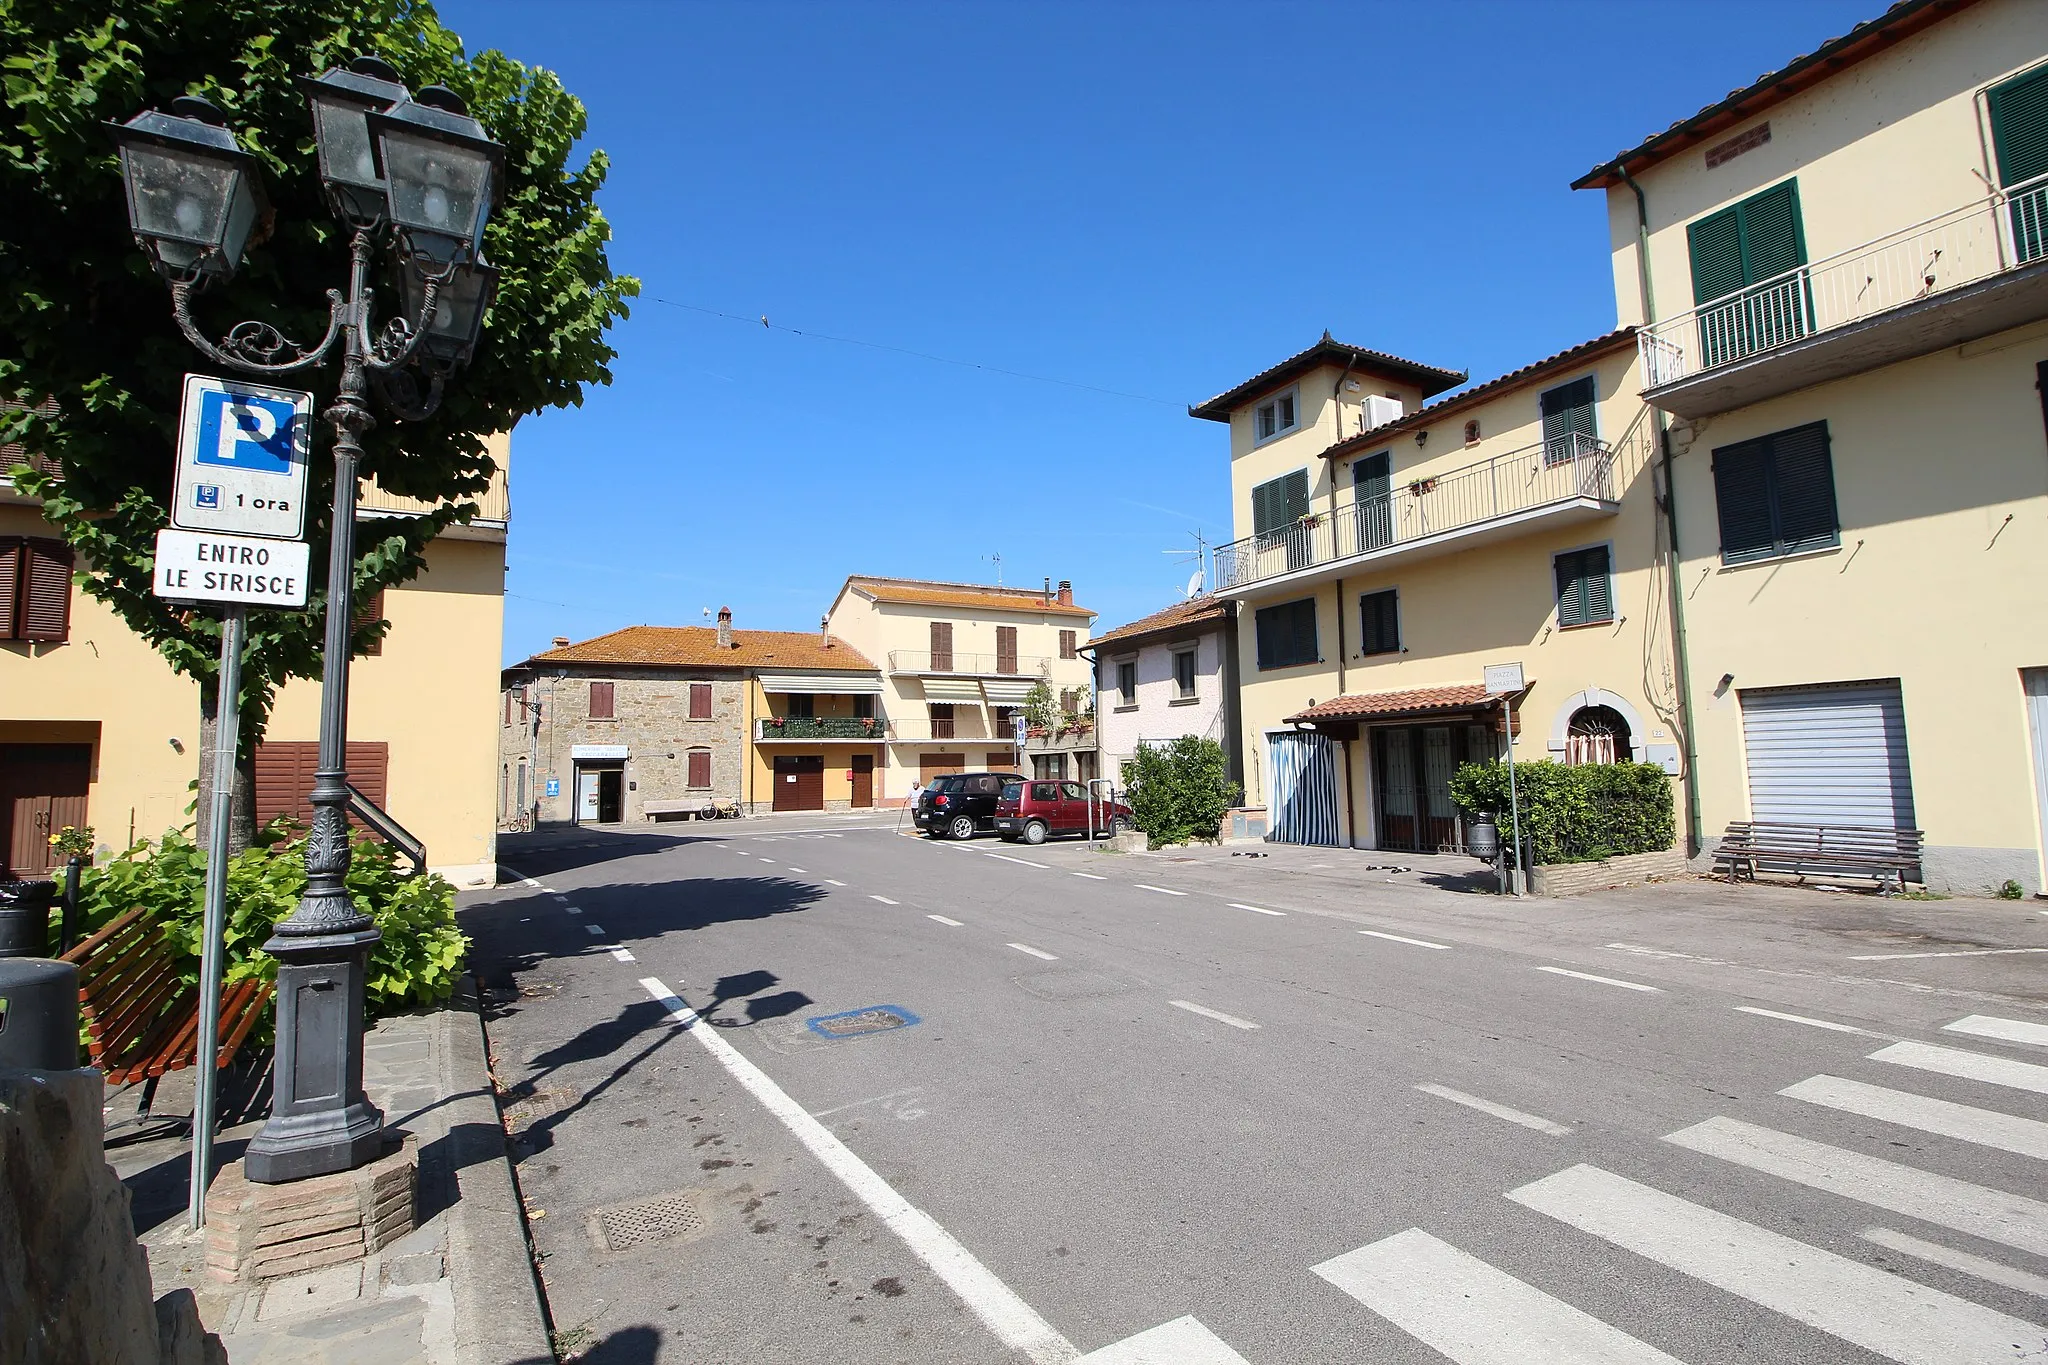 Photo showing: Borghetto (Borghetto di Tuoro), hamlet of Tuoro sul Trasimeno, Province of Perugia, Umbria, Italy